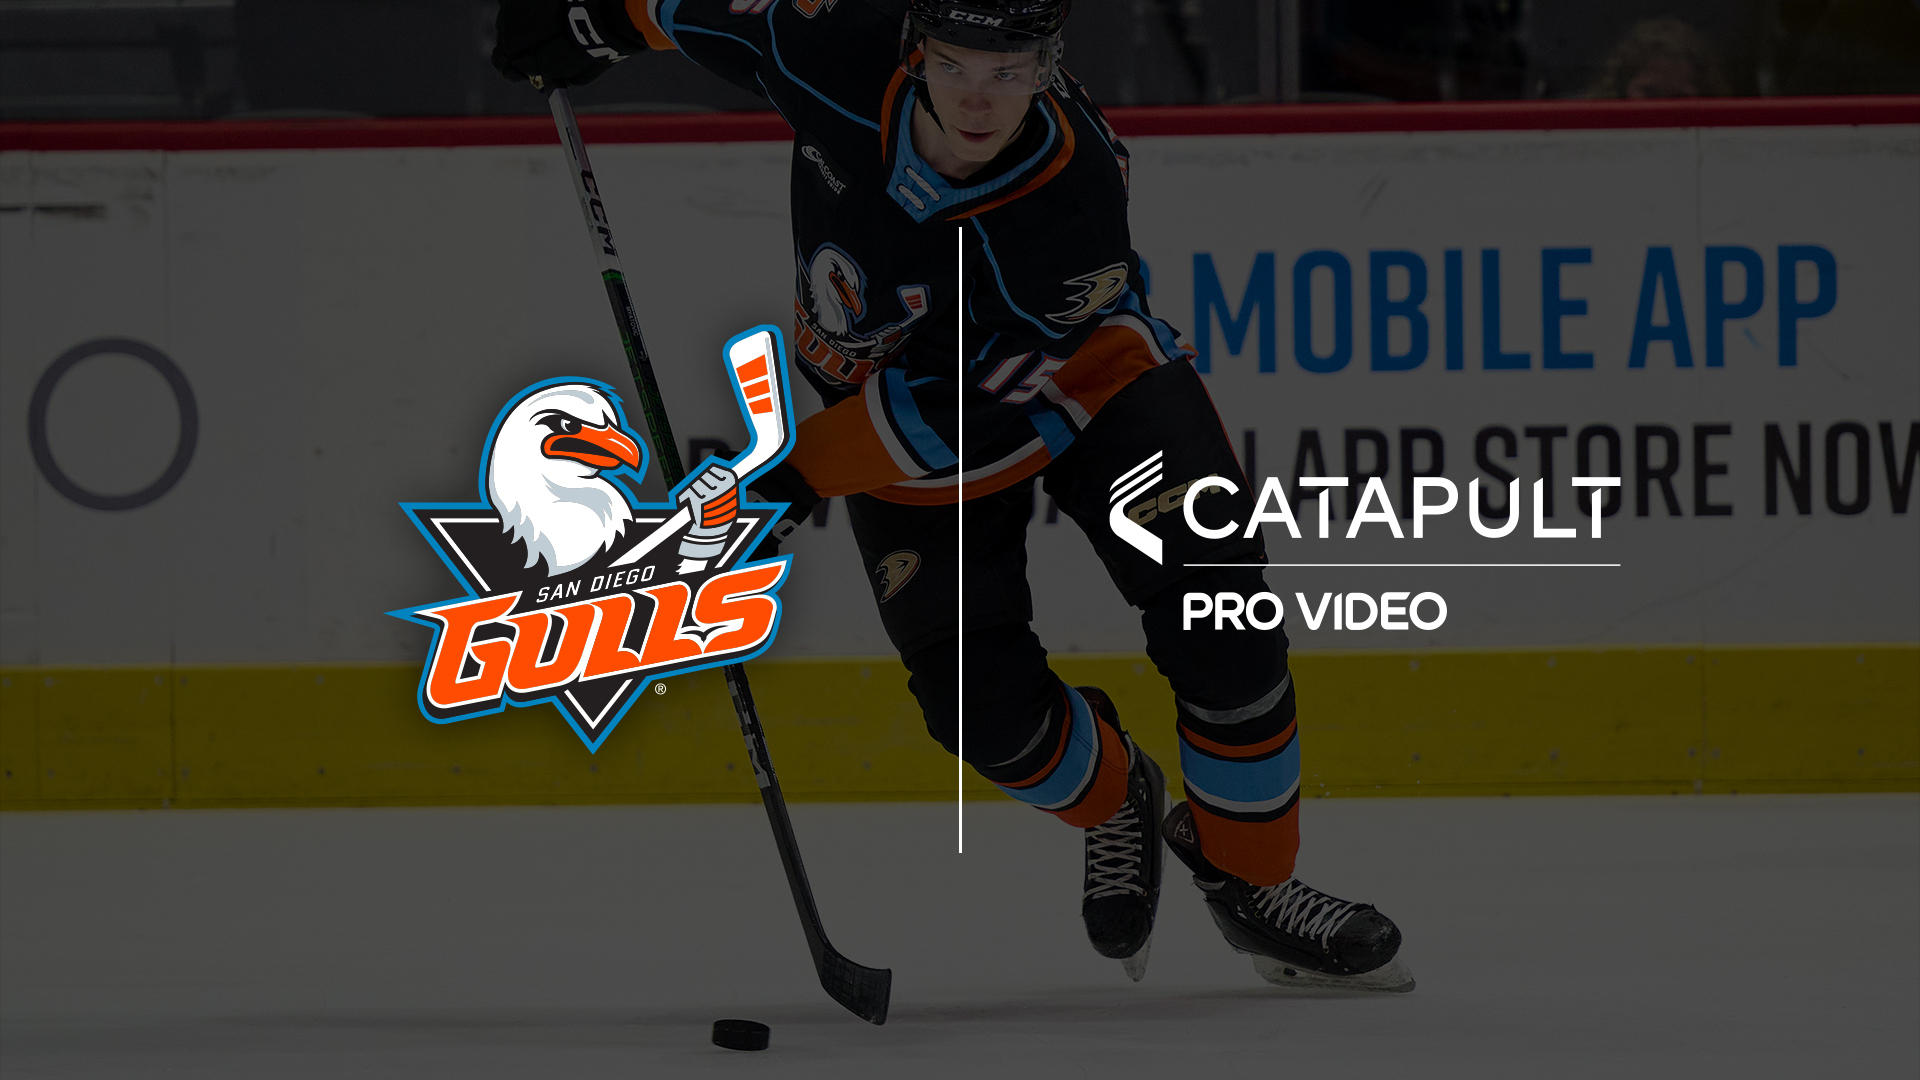 Ein Eishockeyspieler der San Diego Gulls in Aktion auf dem Eis. Das Logo der San Diego Gulls und das Logo von Catapult Pro Video sind nebeneinander zu sehen und betonen ihre Partnerschaft bei der erweiterten Videoanalyse zur Verbesserung der Teamleistung.